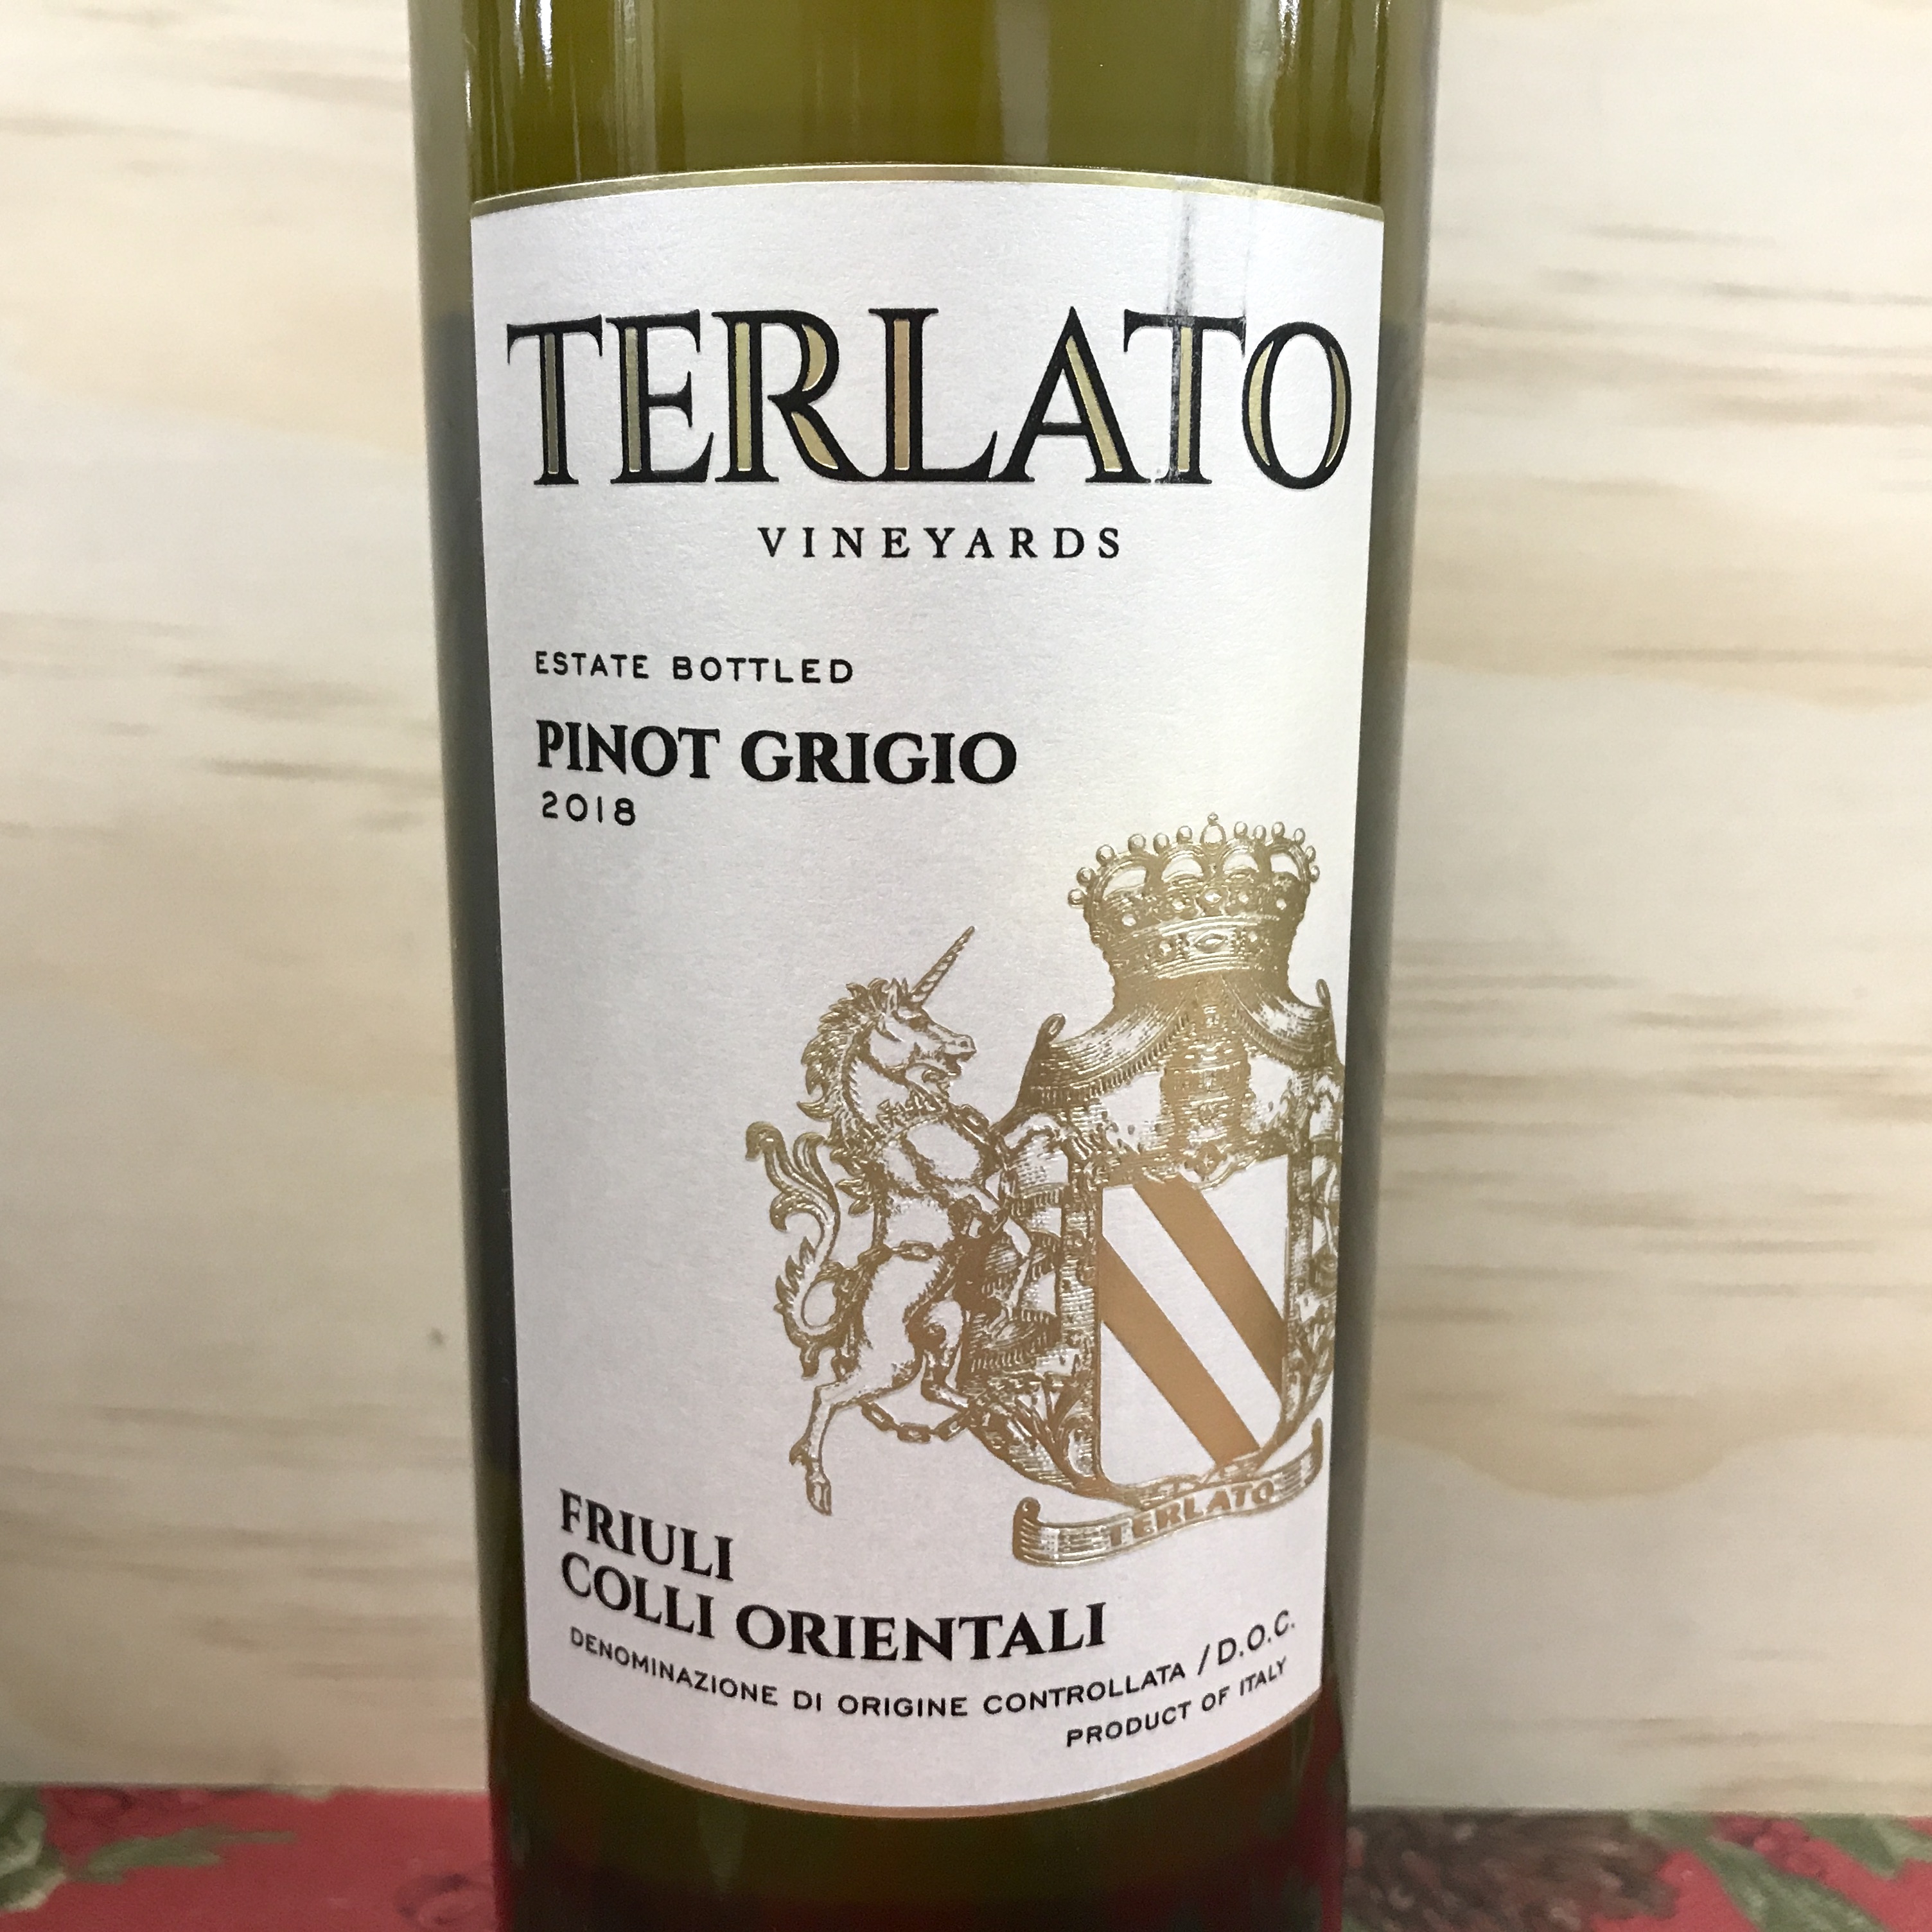 Terlato Pinot Grigio Friuli Colli Orientali 2019